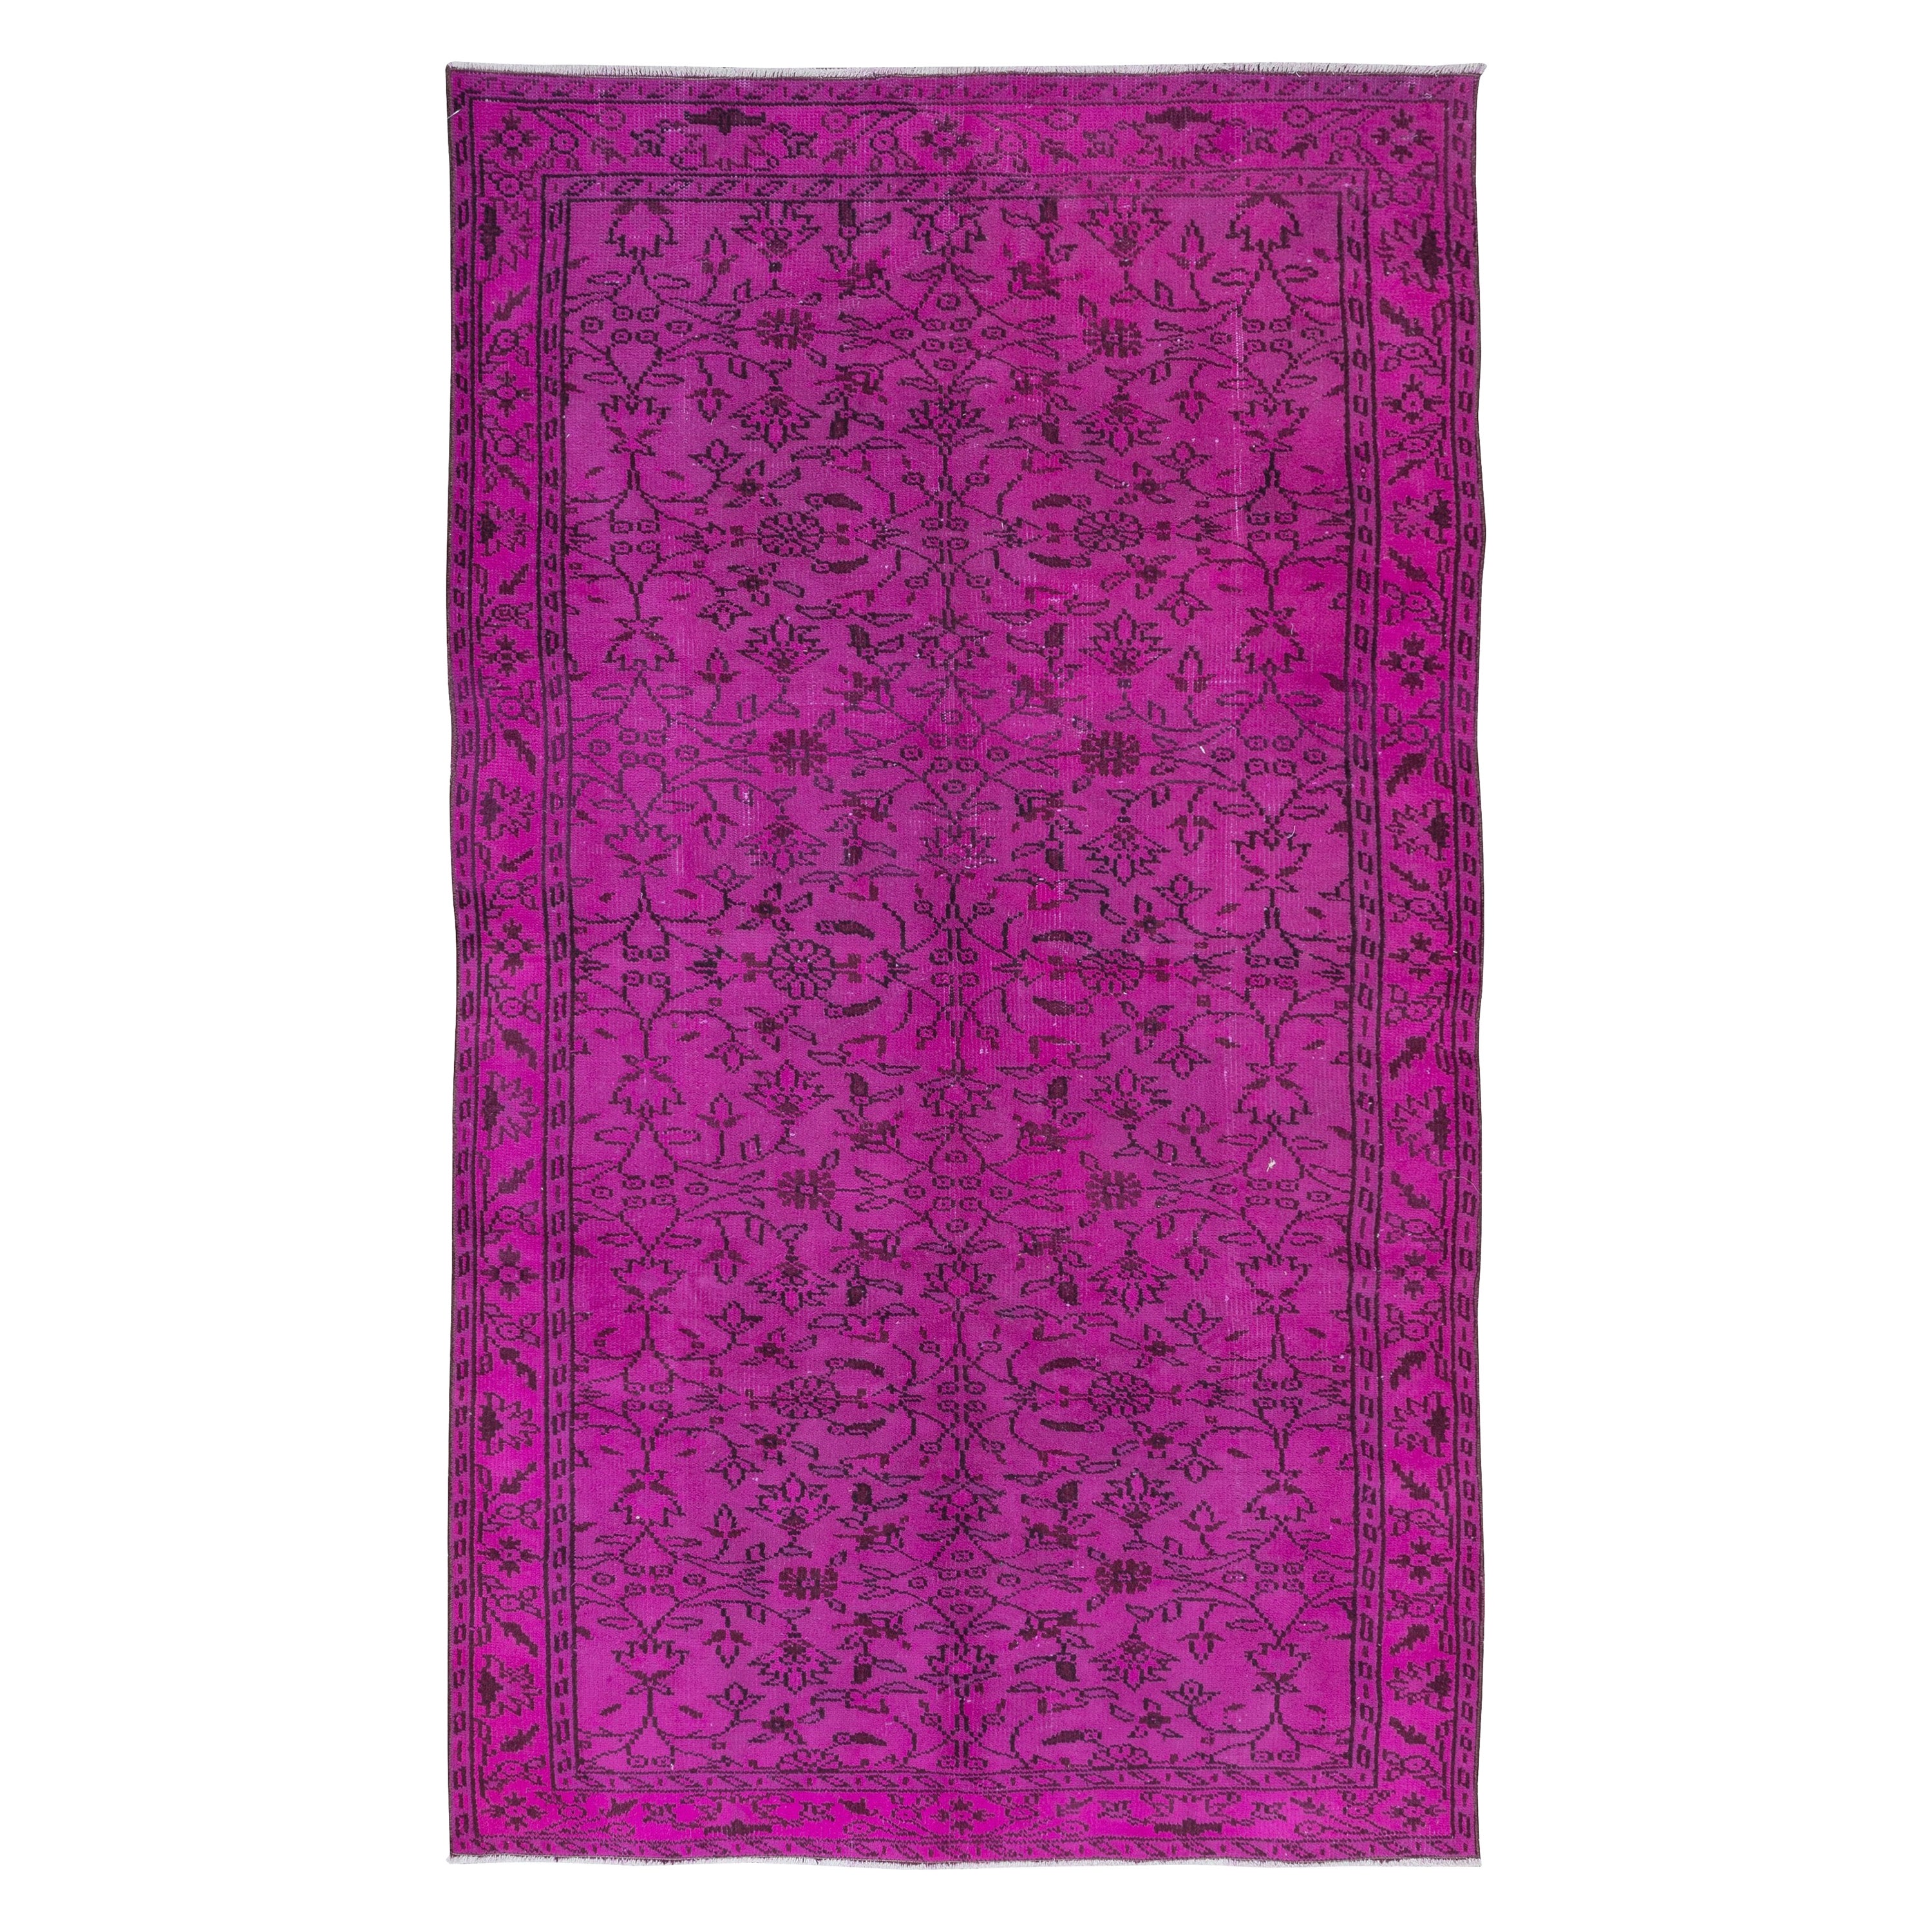 5.5x8.7 Ft Tapis Modernity à motifs floraux en rose, tissé et noué à la main en Turquie en vente